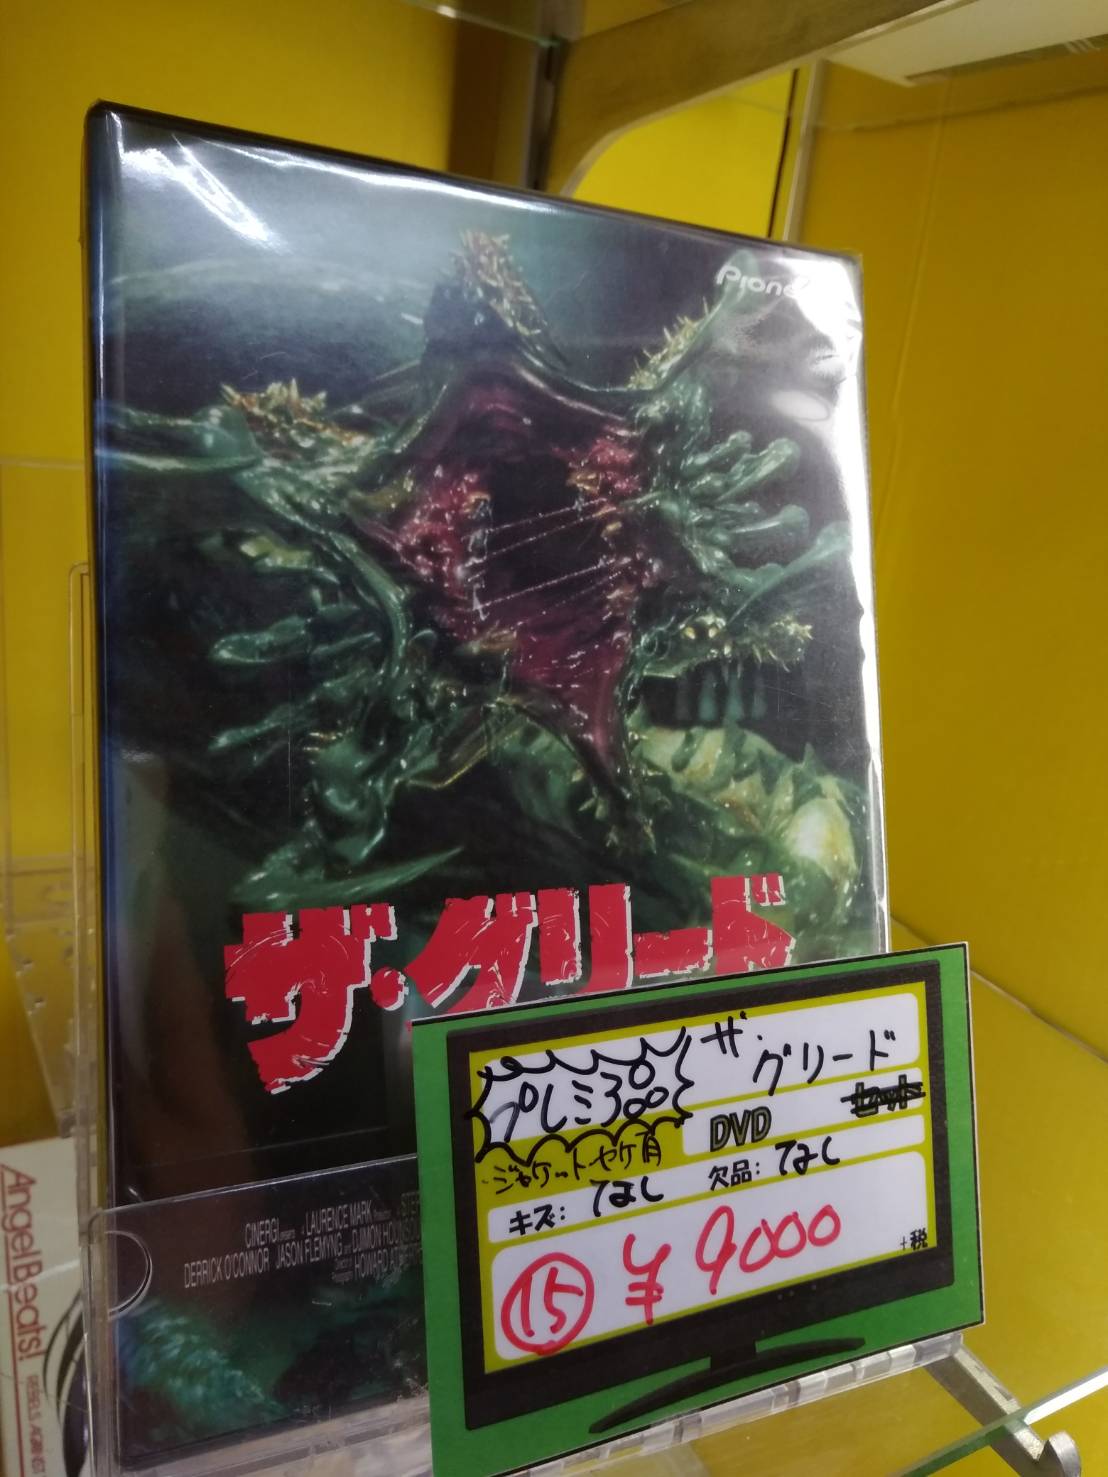 ザ・グリード　DVD